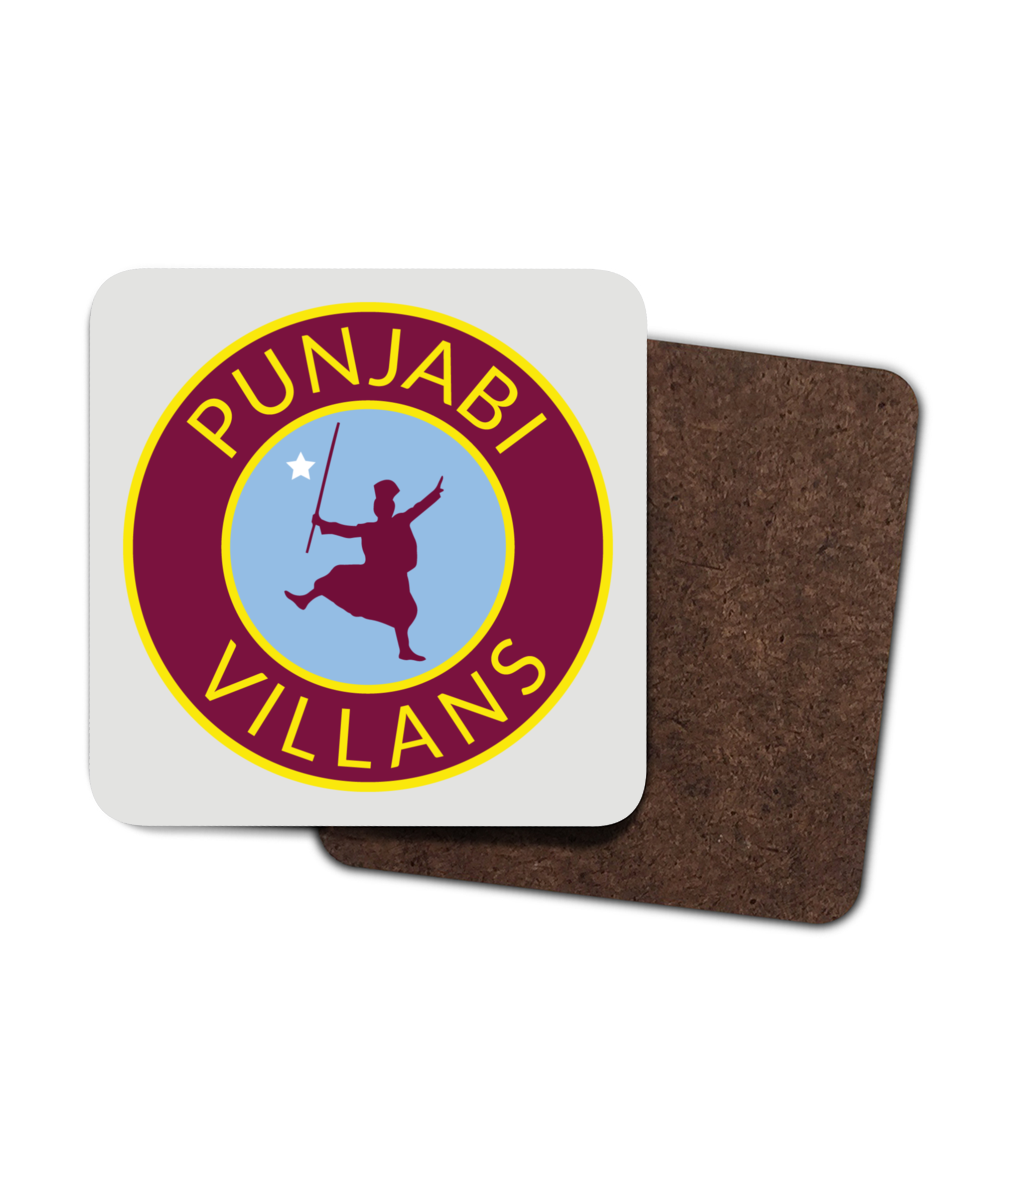 4 Pack Hardboard Coaster Punjabi Villans